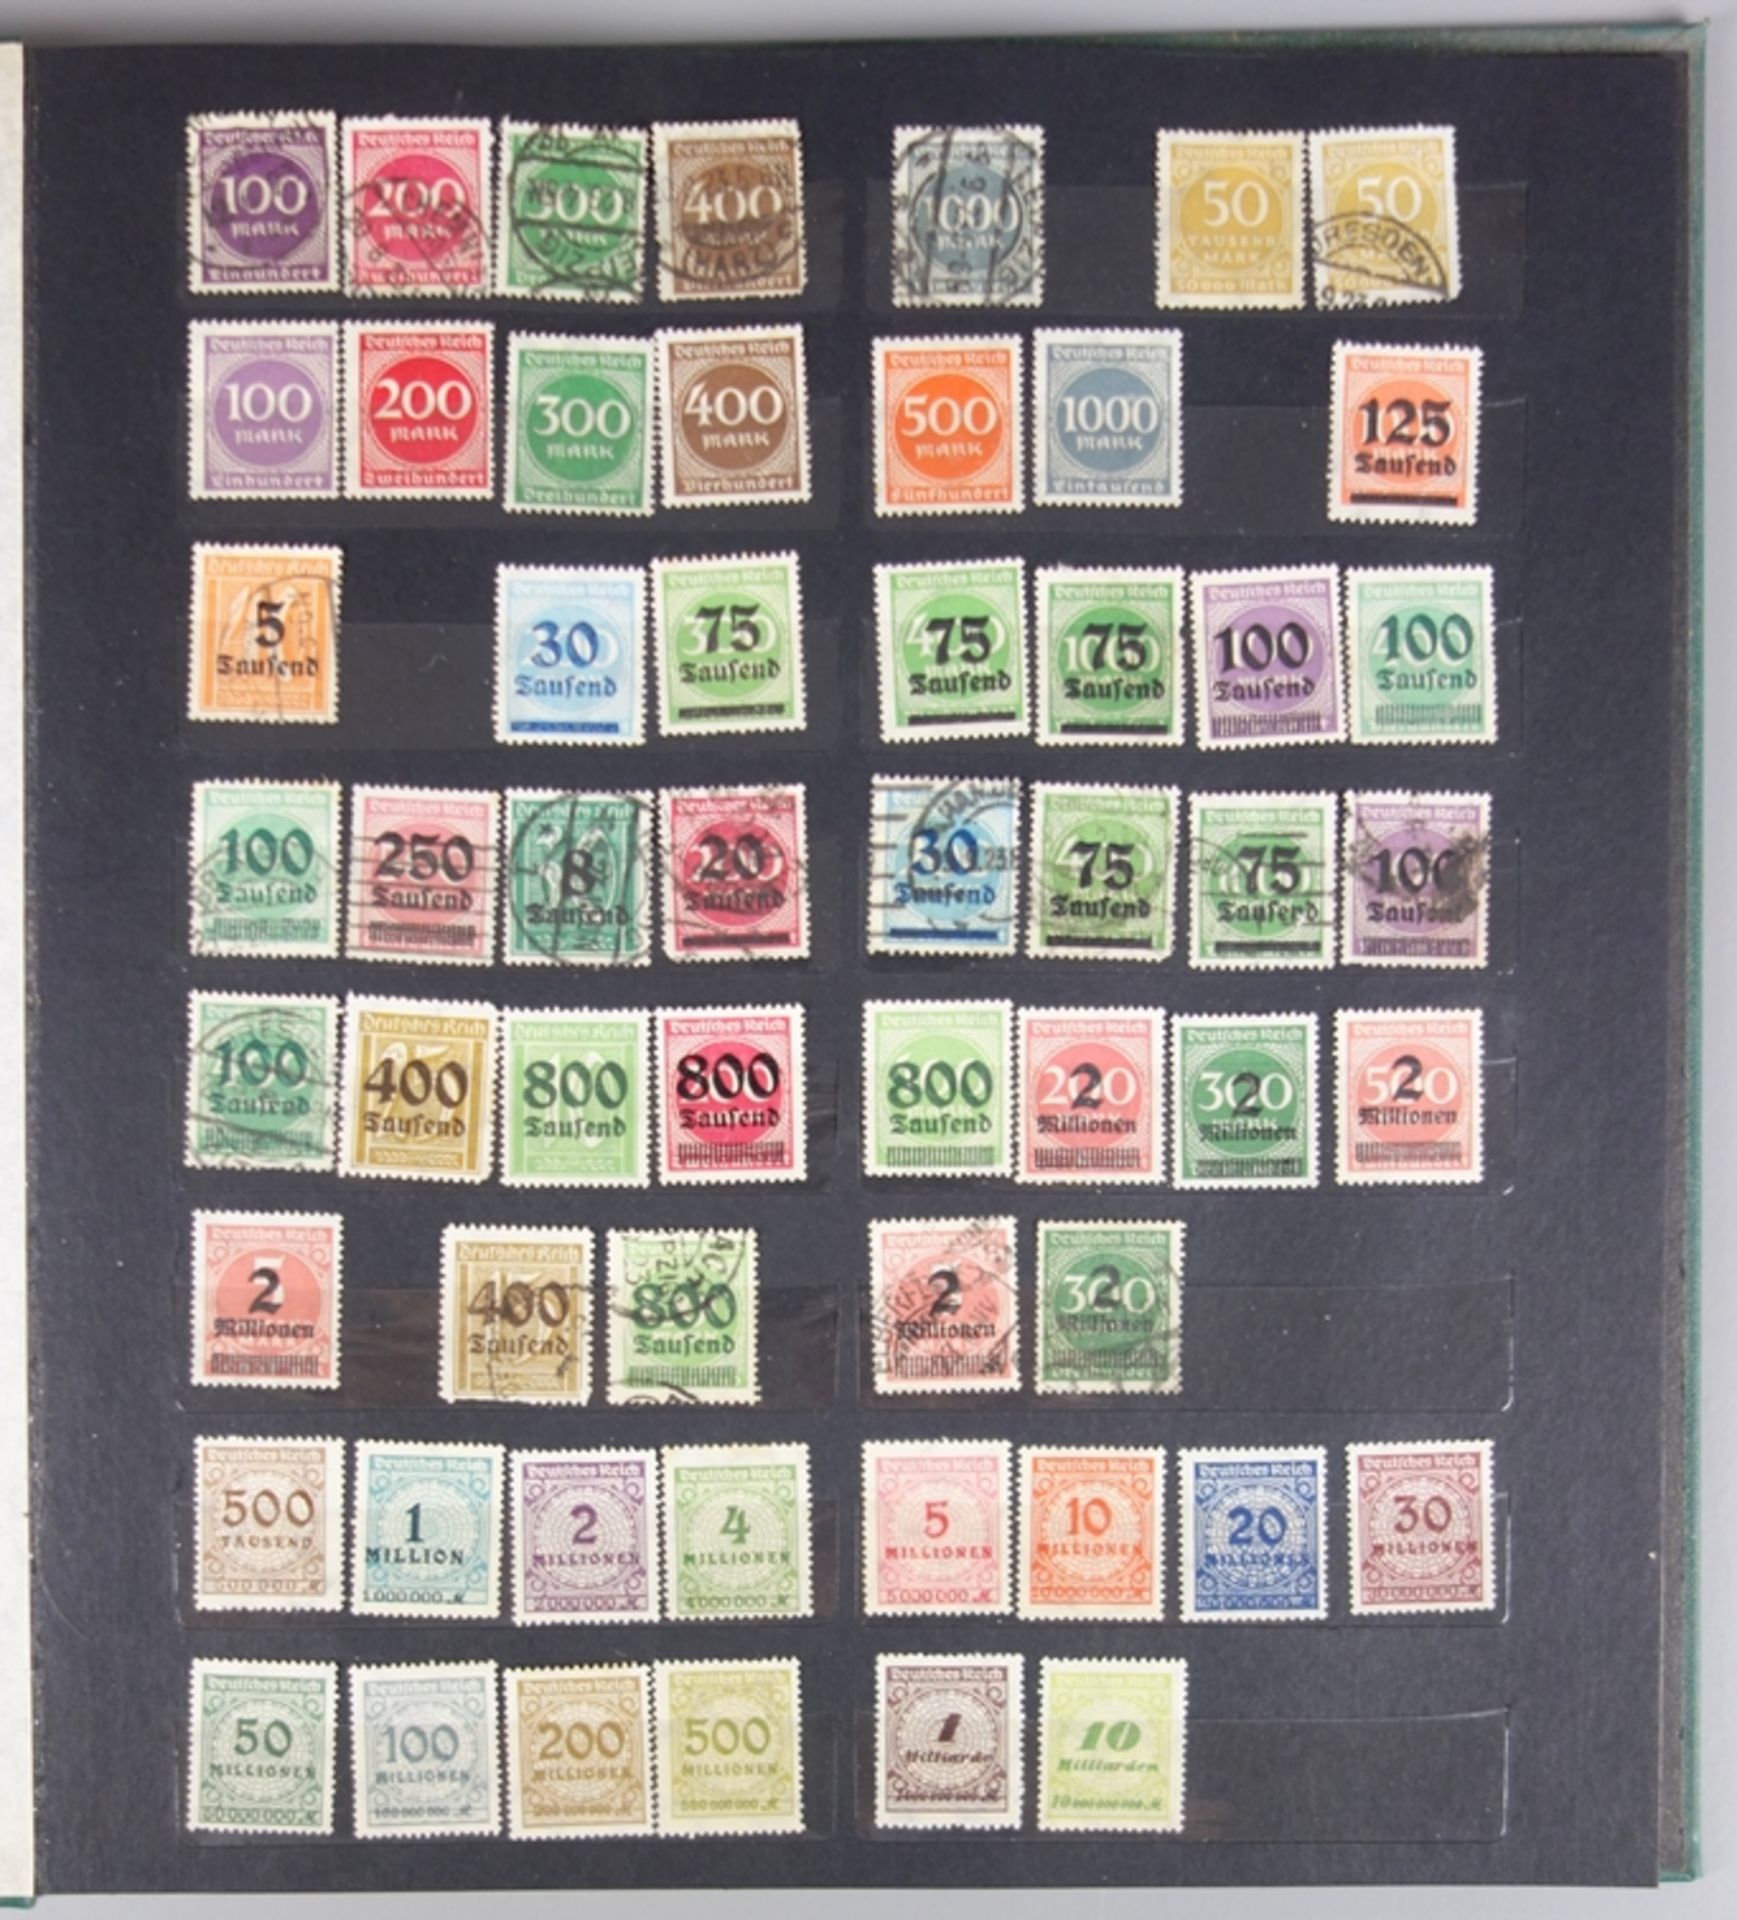 2 Alben mit Briefmarken, Deutsches Reich, aus der Zeit ab 1872 bis 1945 - Bild 4 aus 5